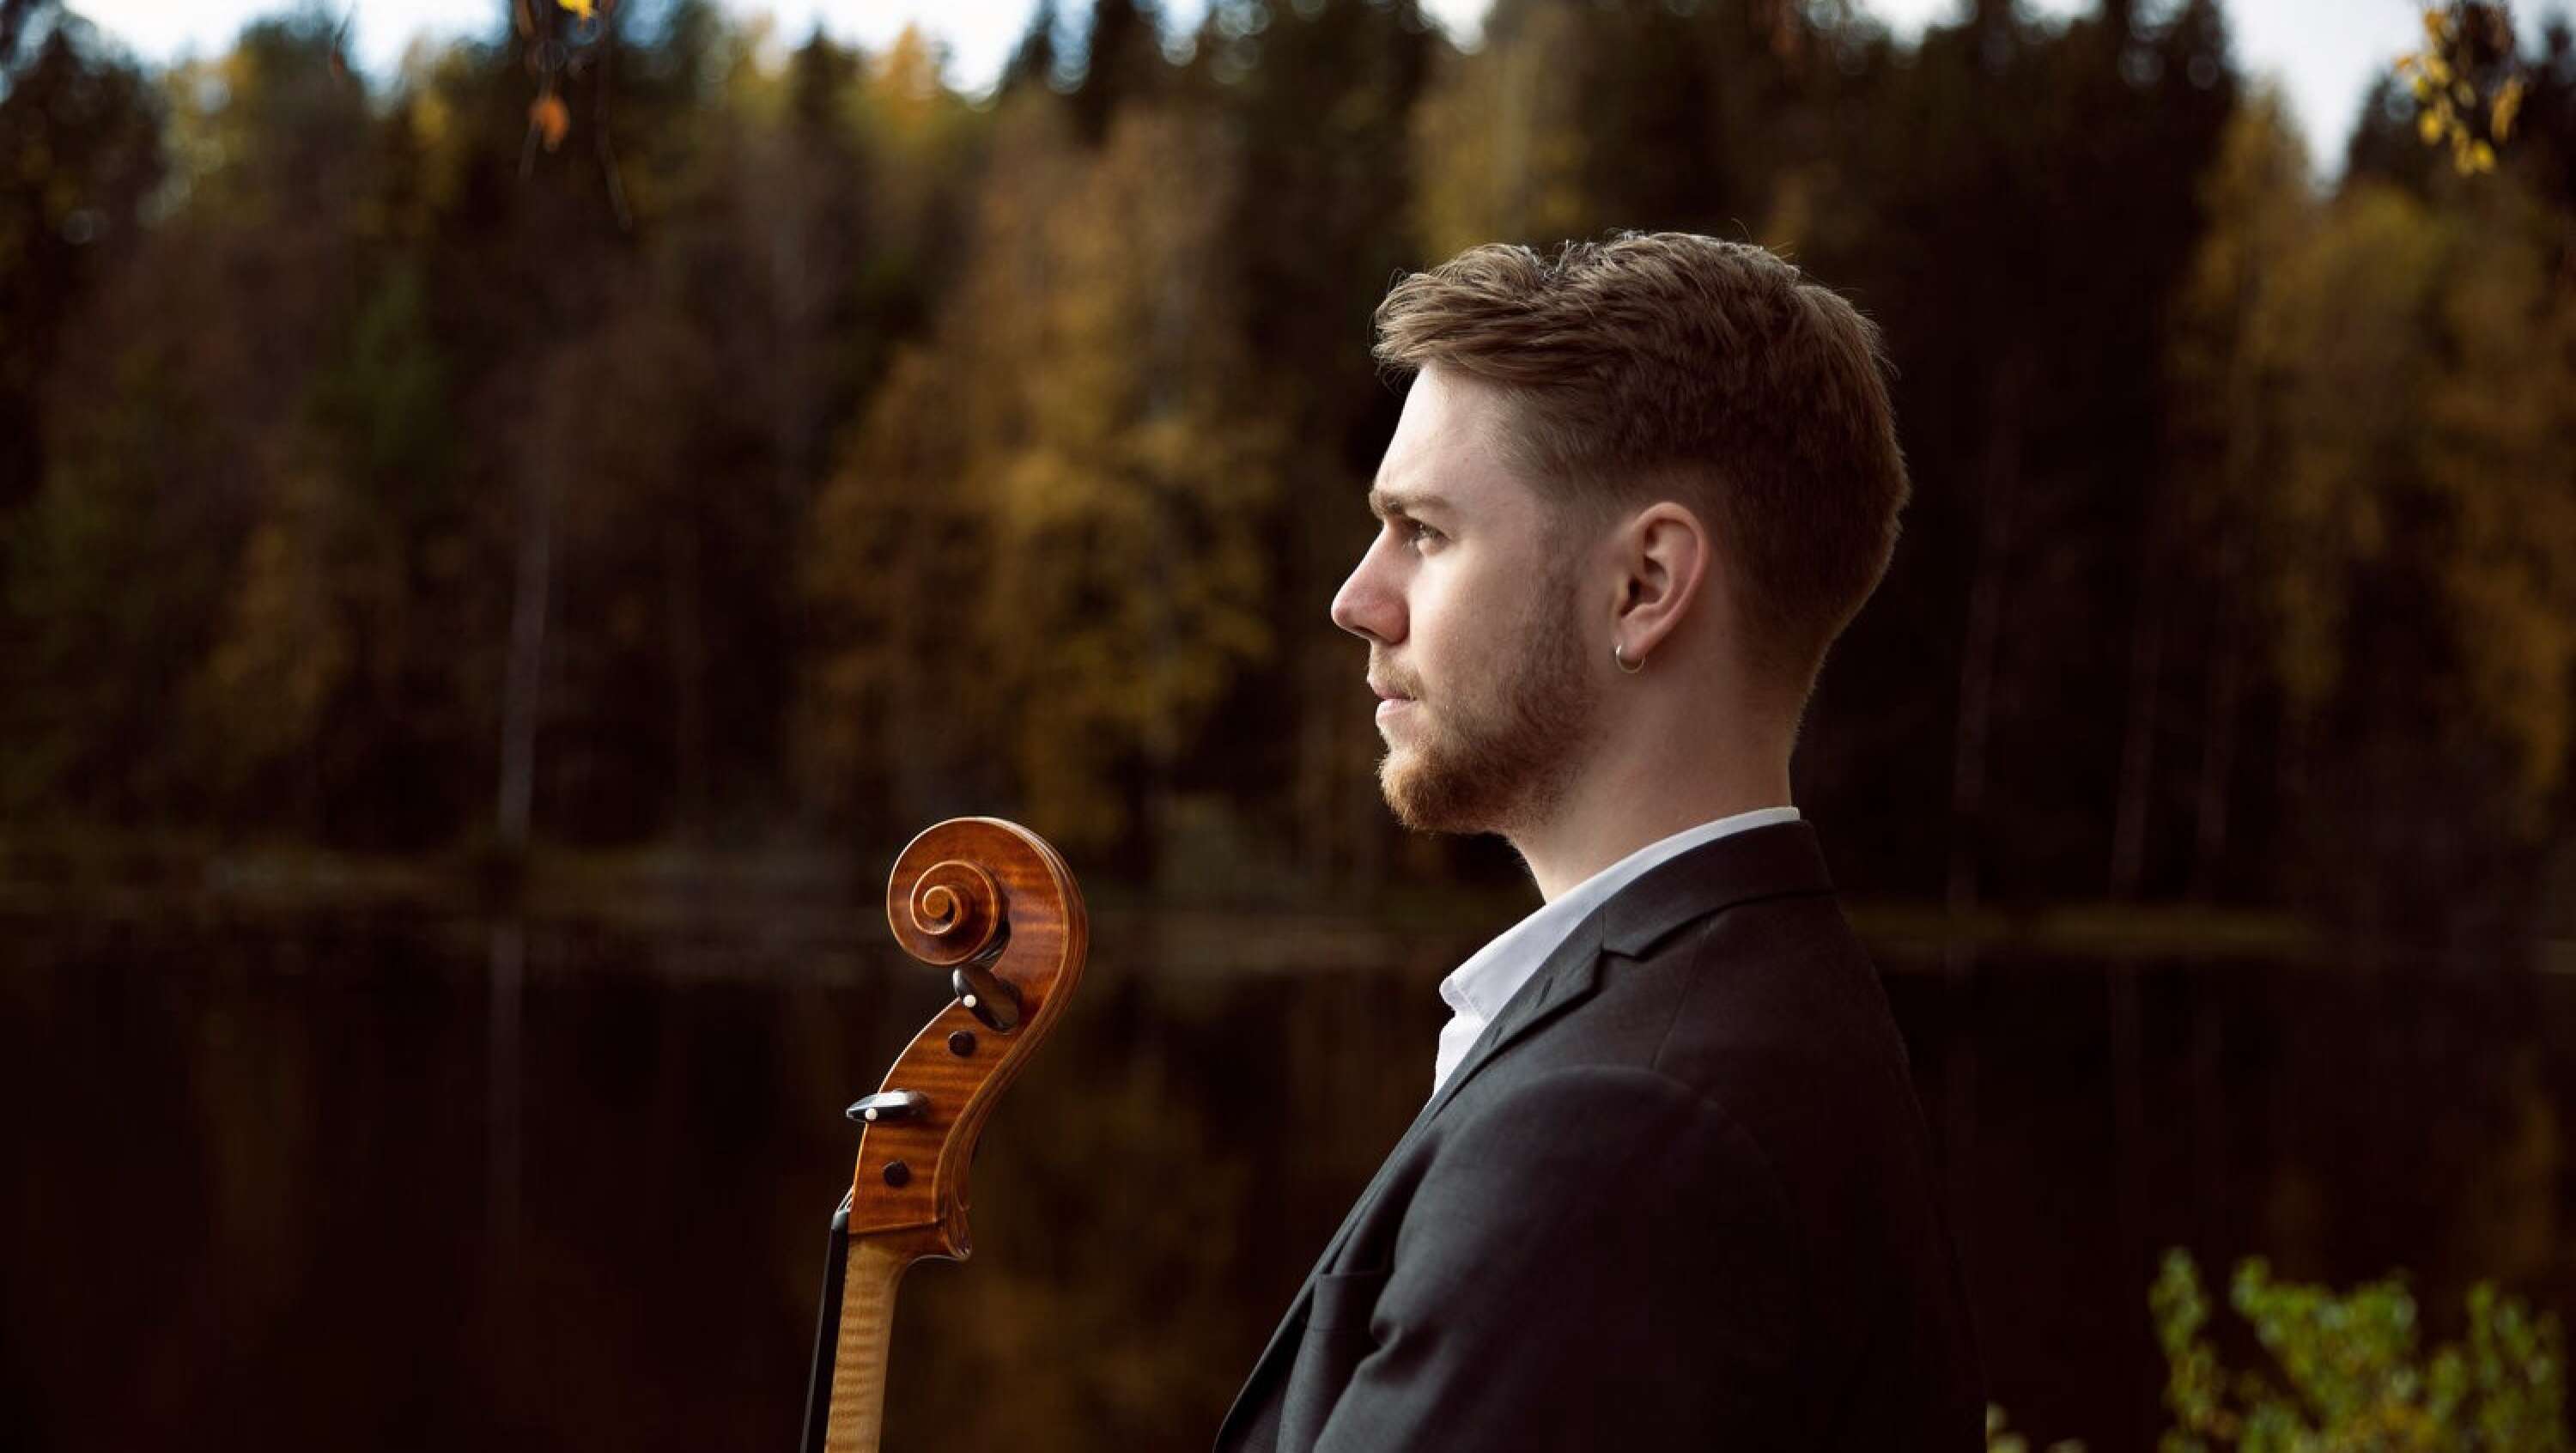 Cellisten Daniel Thorell är på väg att bli ett av Sveriges stora stjärnskott ute i världen, enligt festivalarrangören Jon Dahlkvist. Han kommer uppträda tillsammans med den Arvikabaserade konsertpianisten Sebastian Iivonen. 